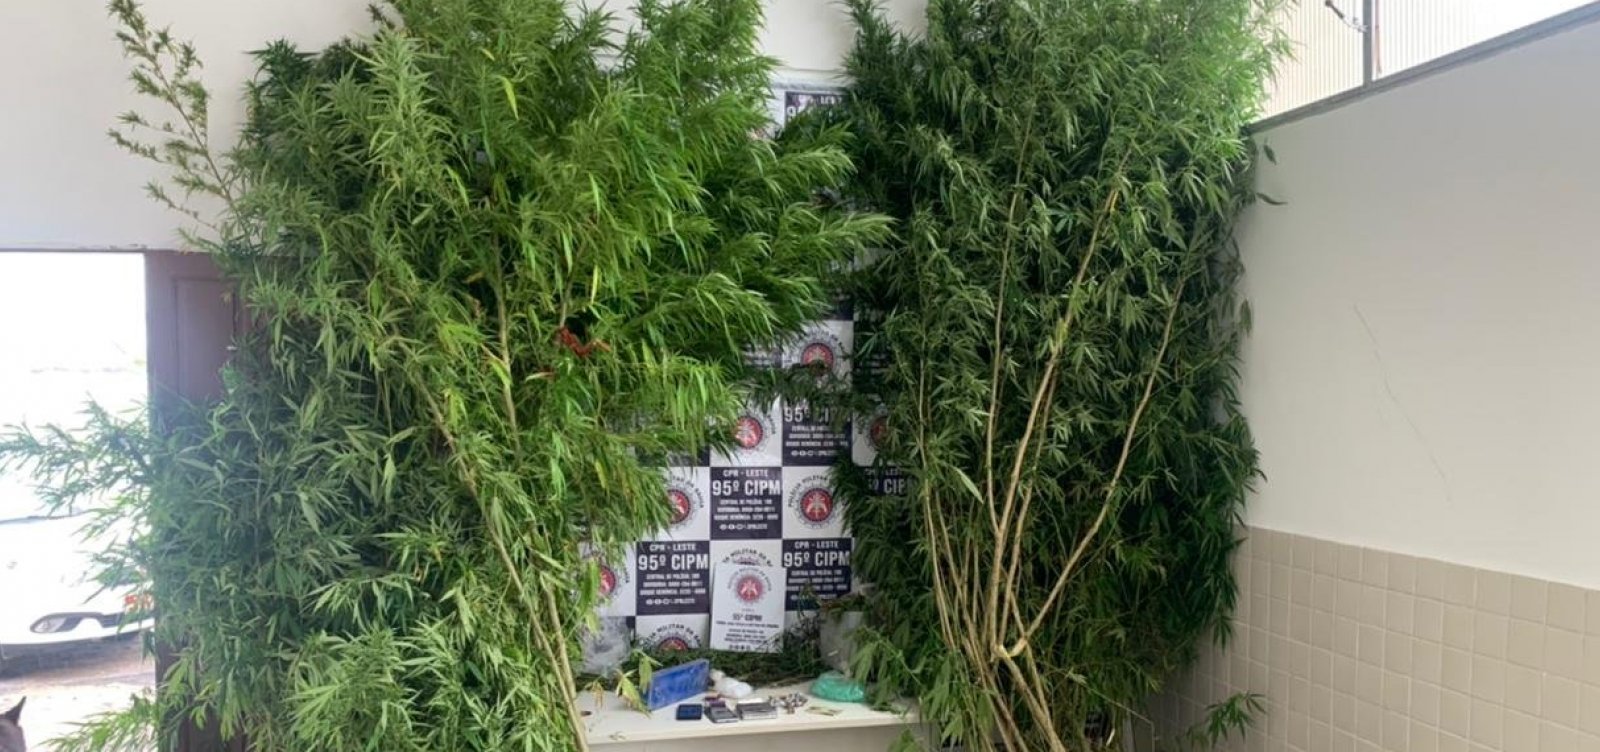 Plantação de maconha é descoberta em quintal de casa em Catu